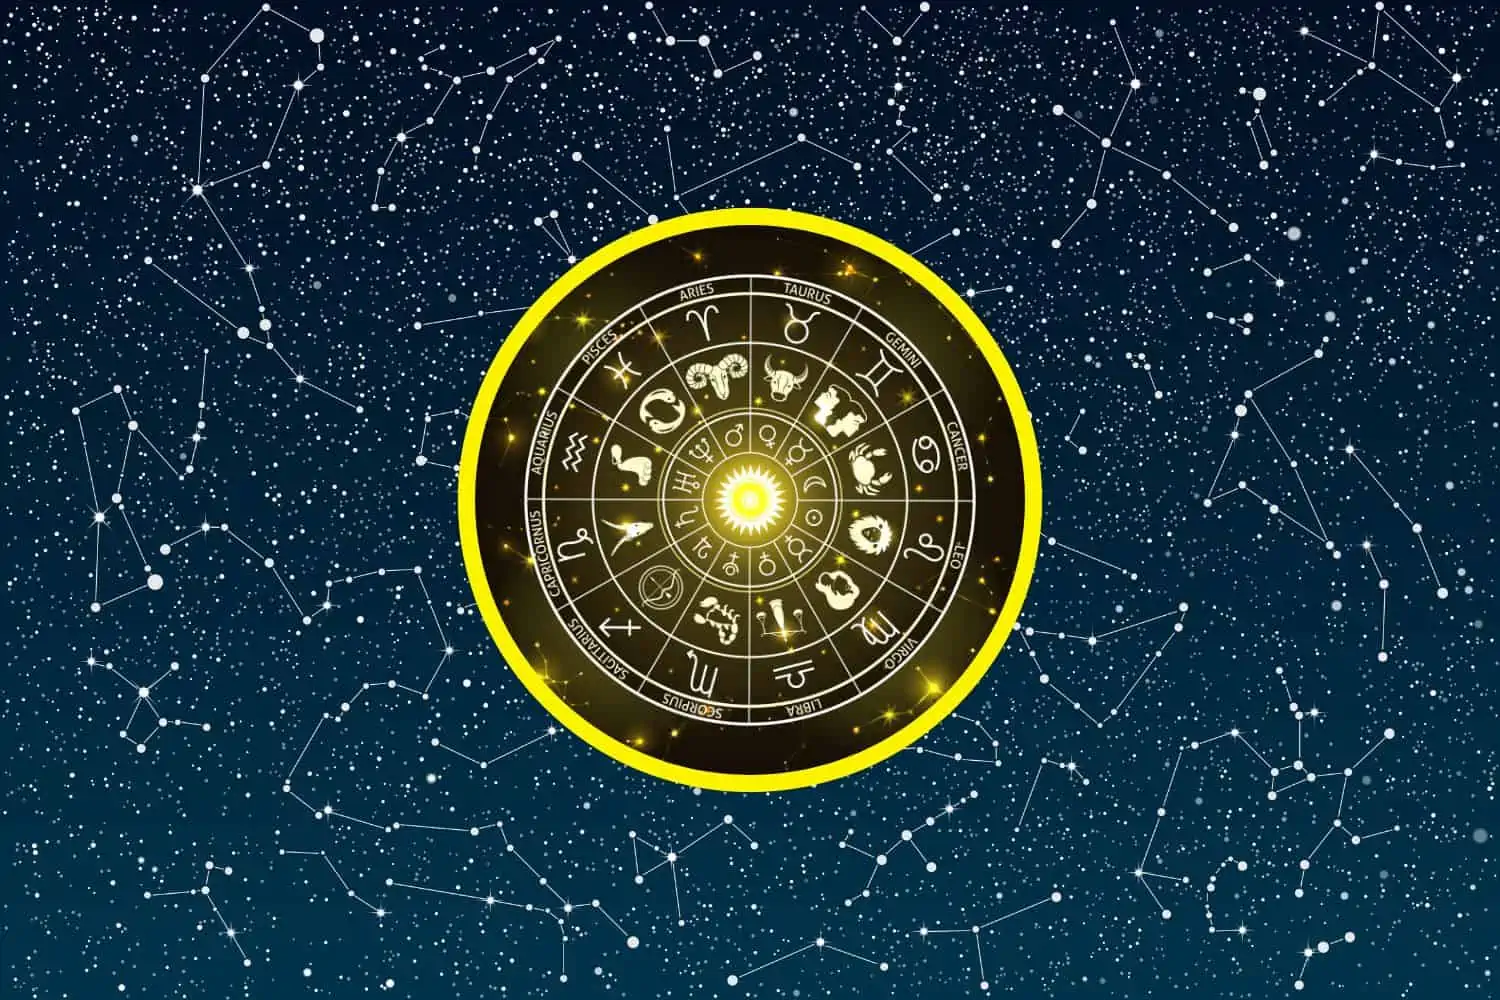 Today’s Free Horoscopes Tuesday 3 January 2023